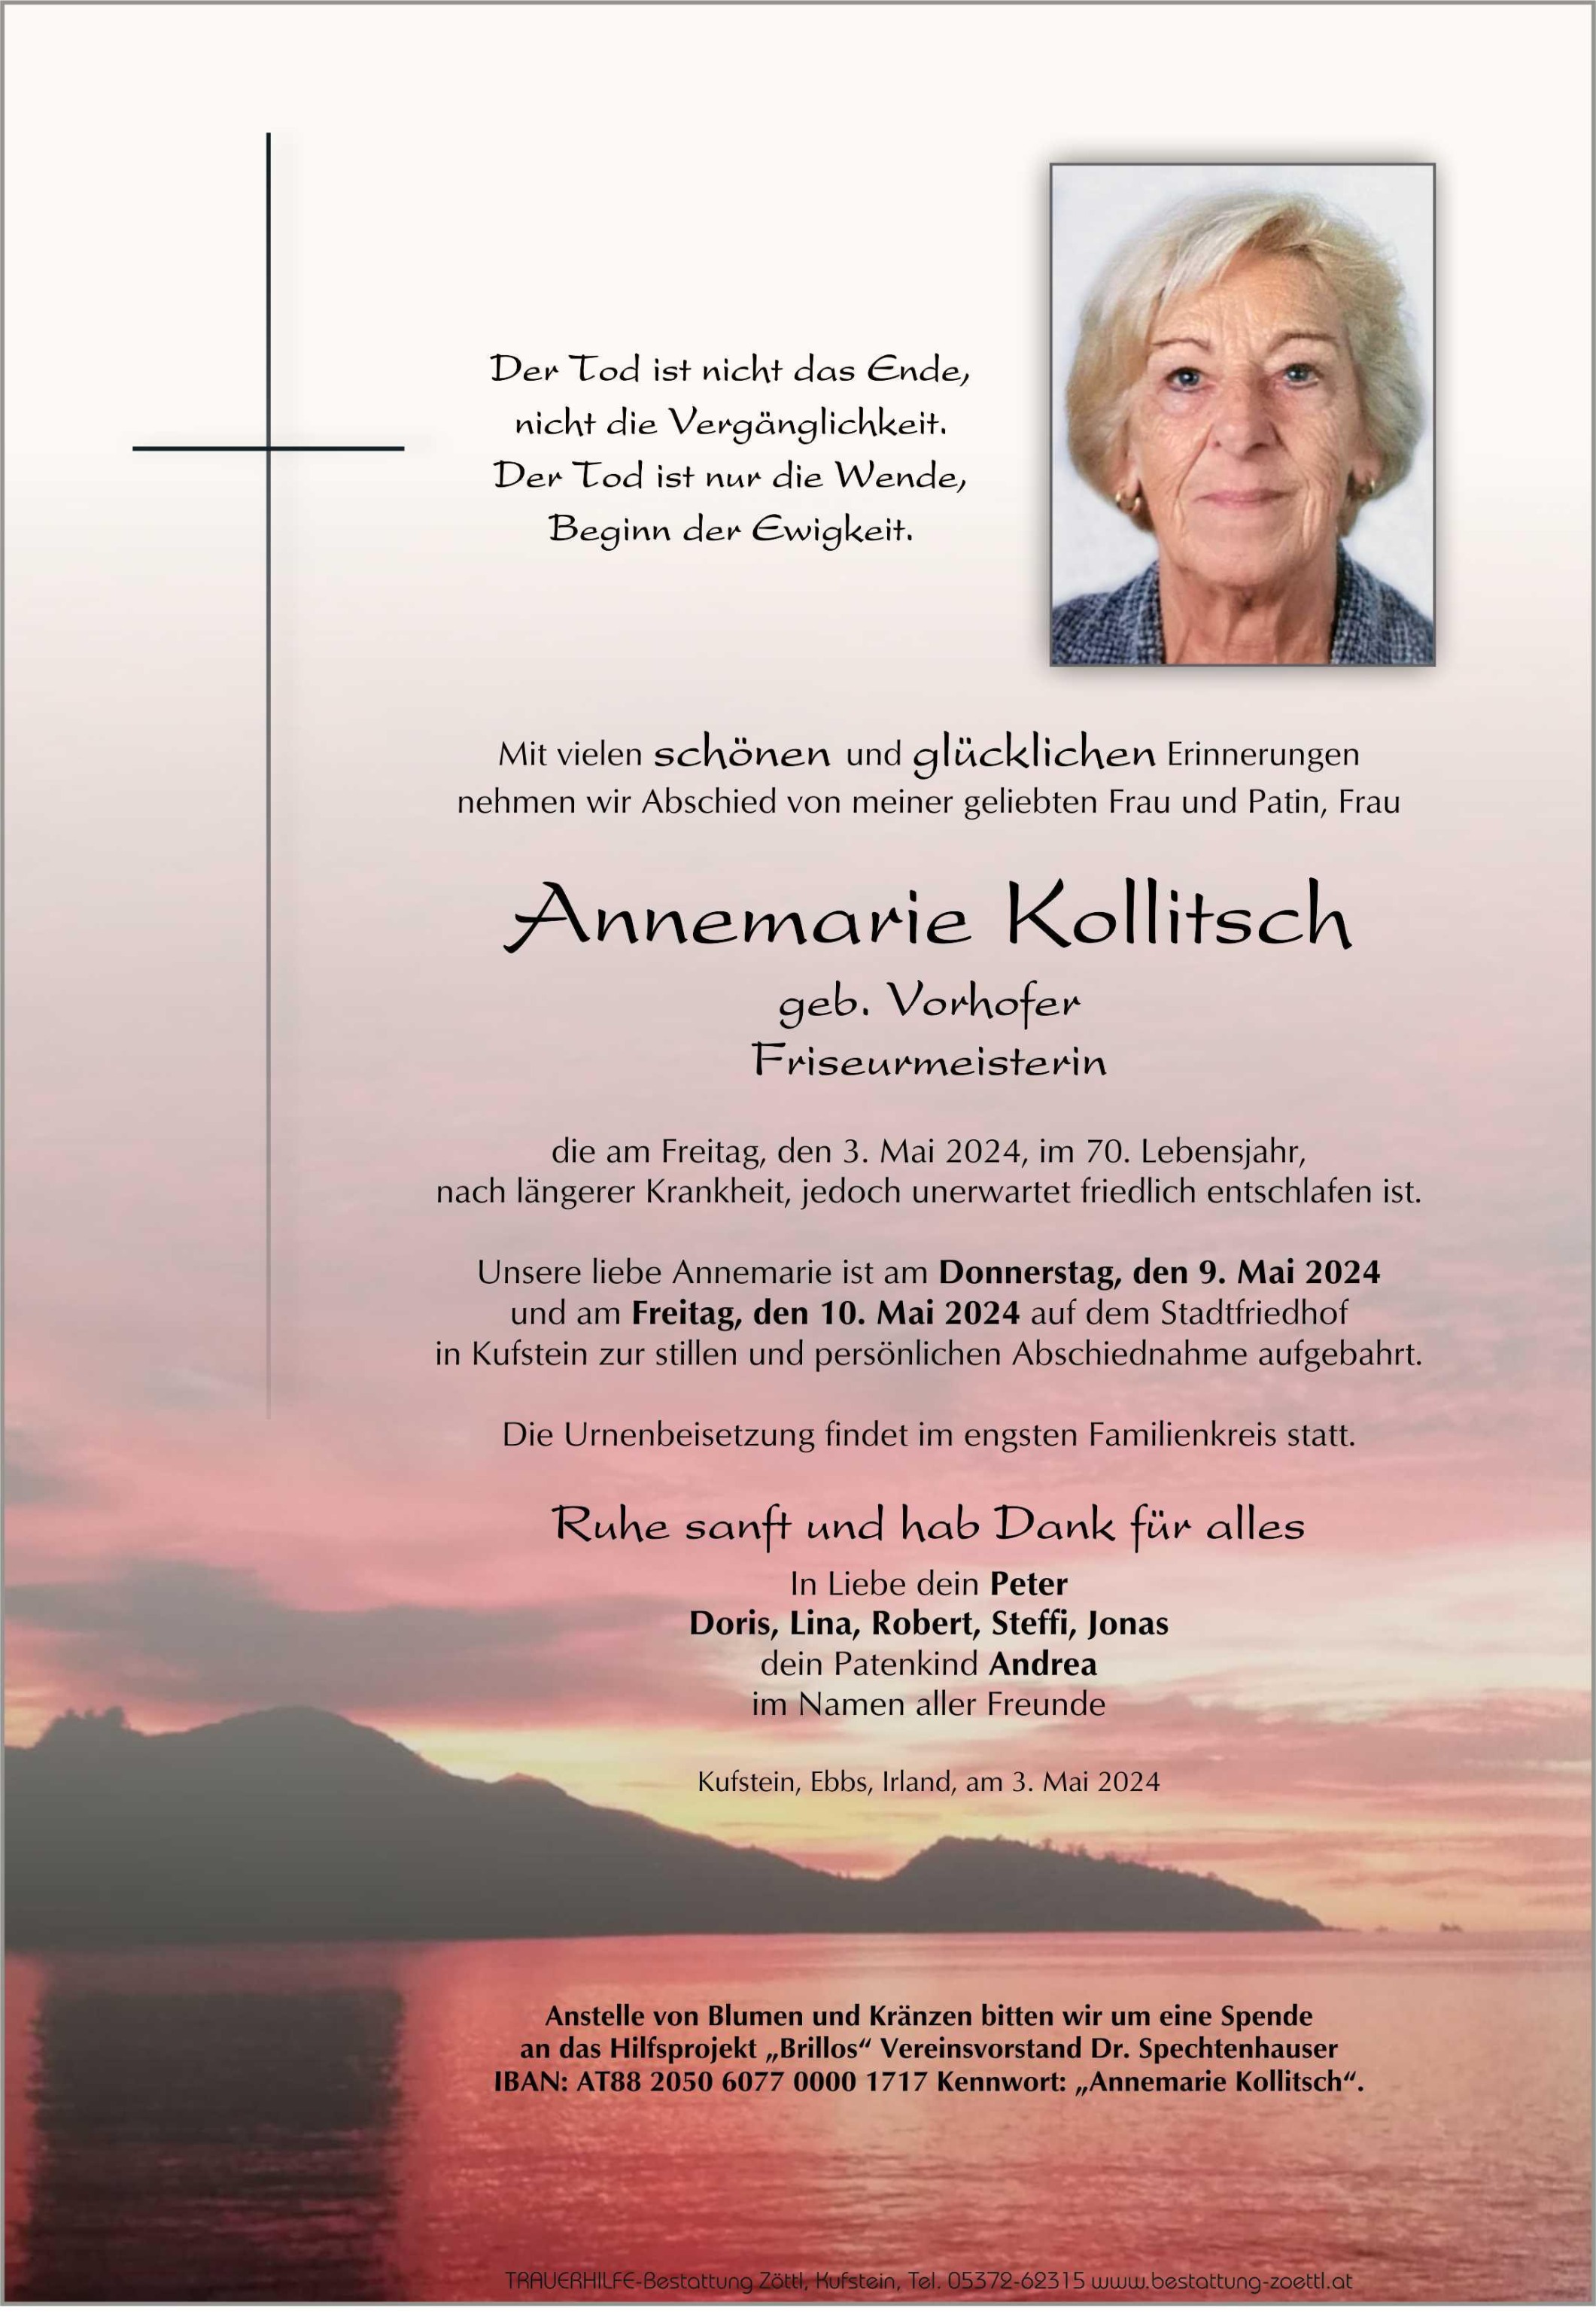 Annemarie Kollitsch